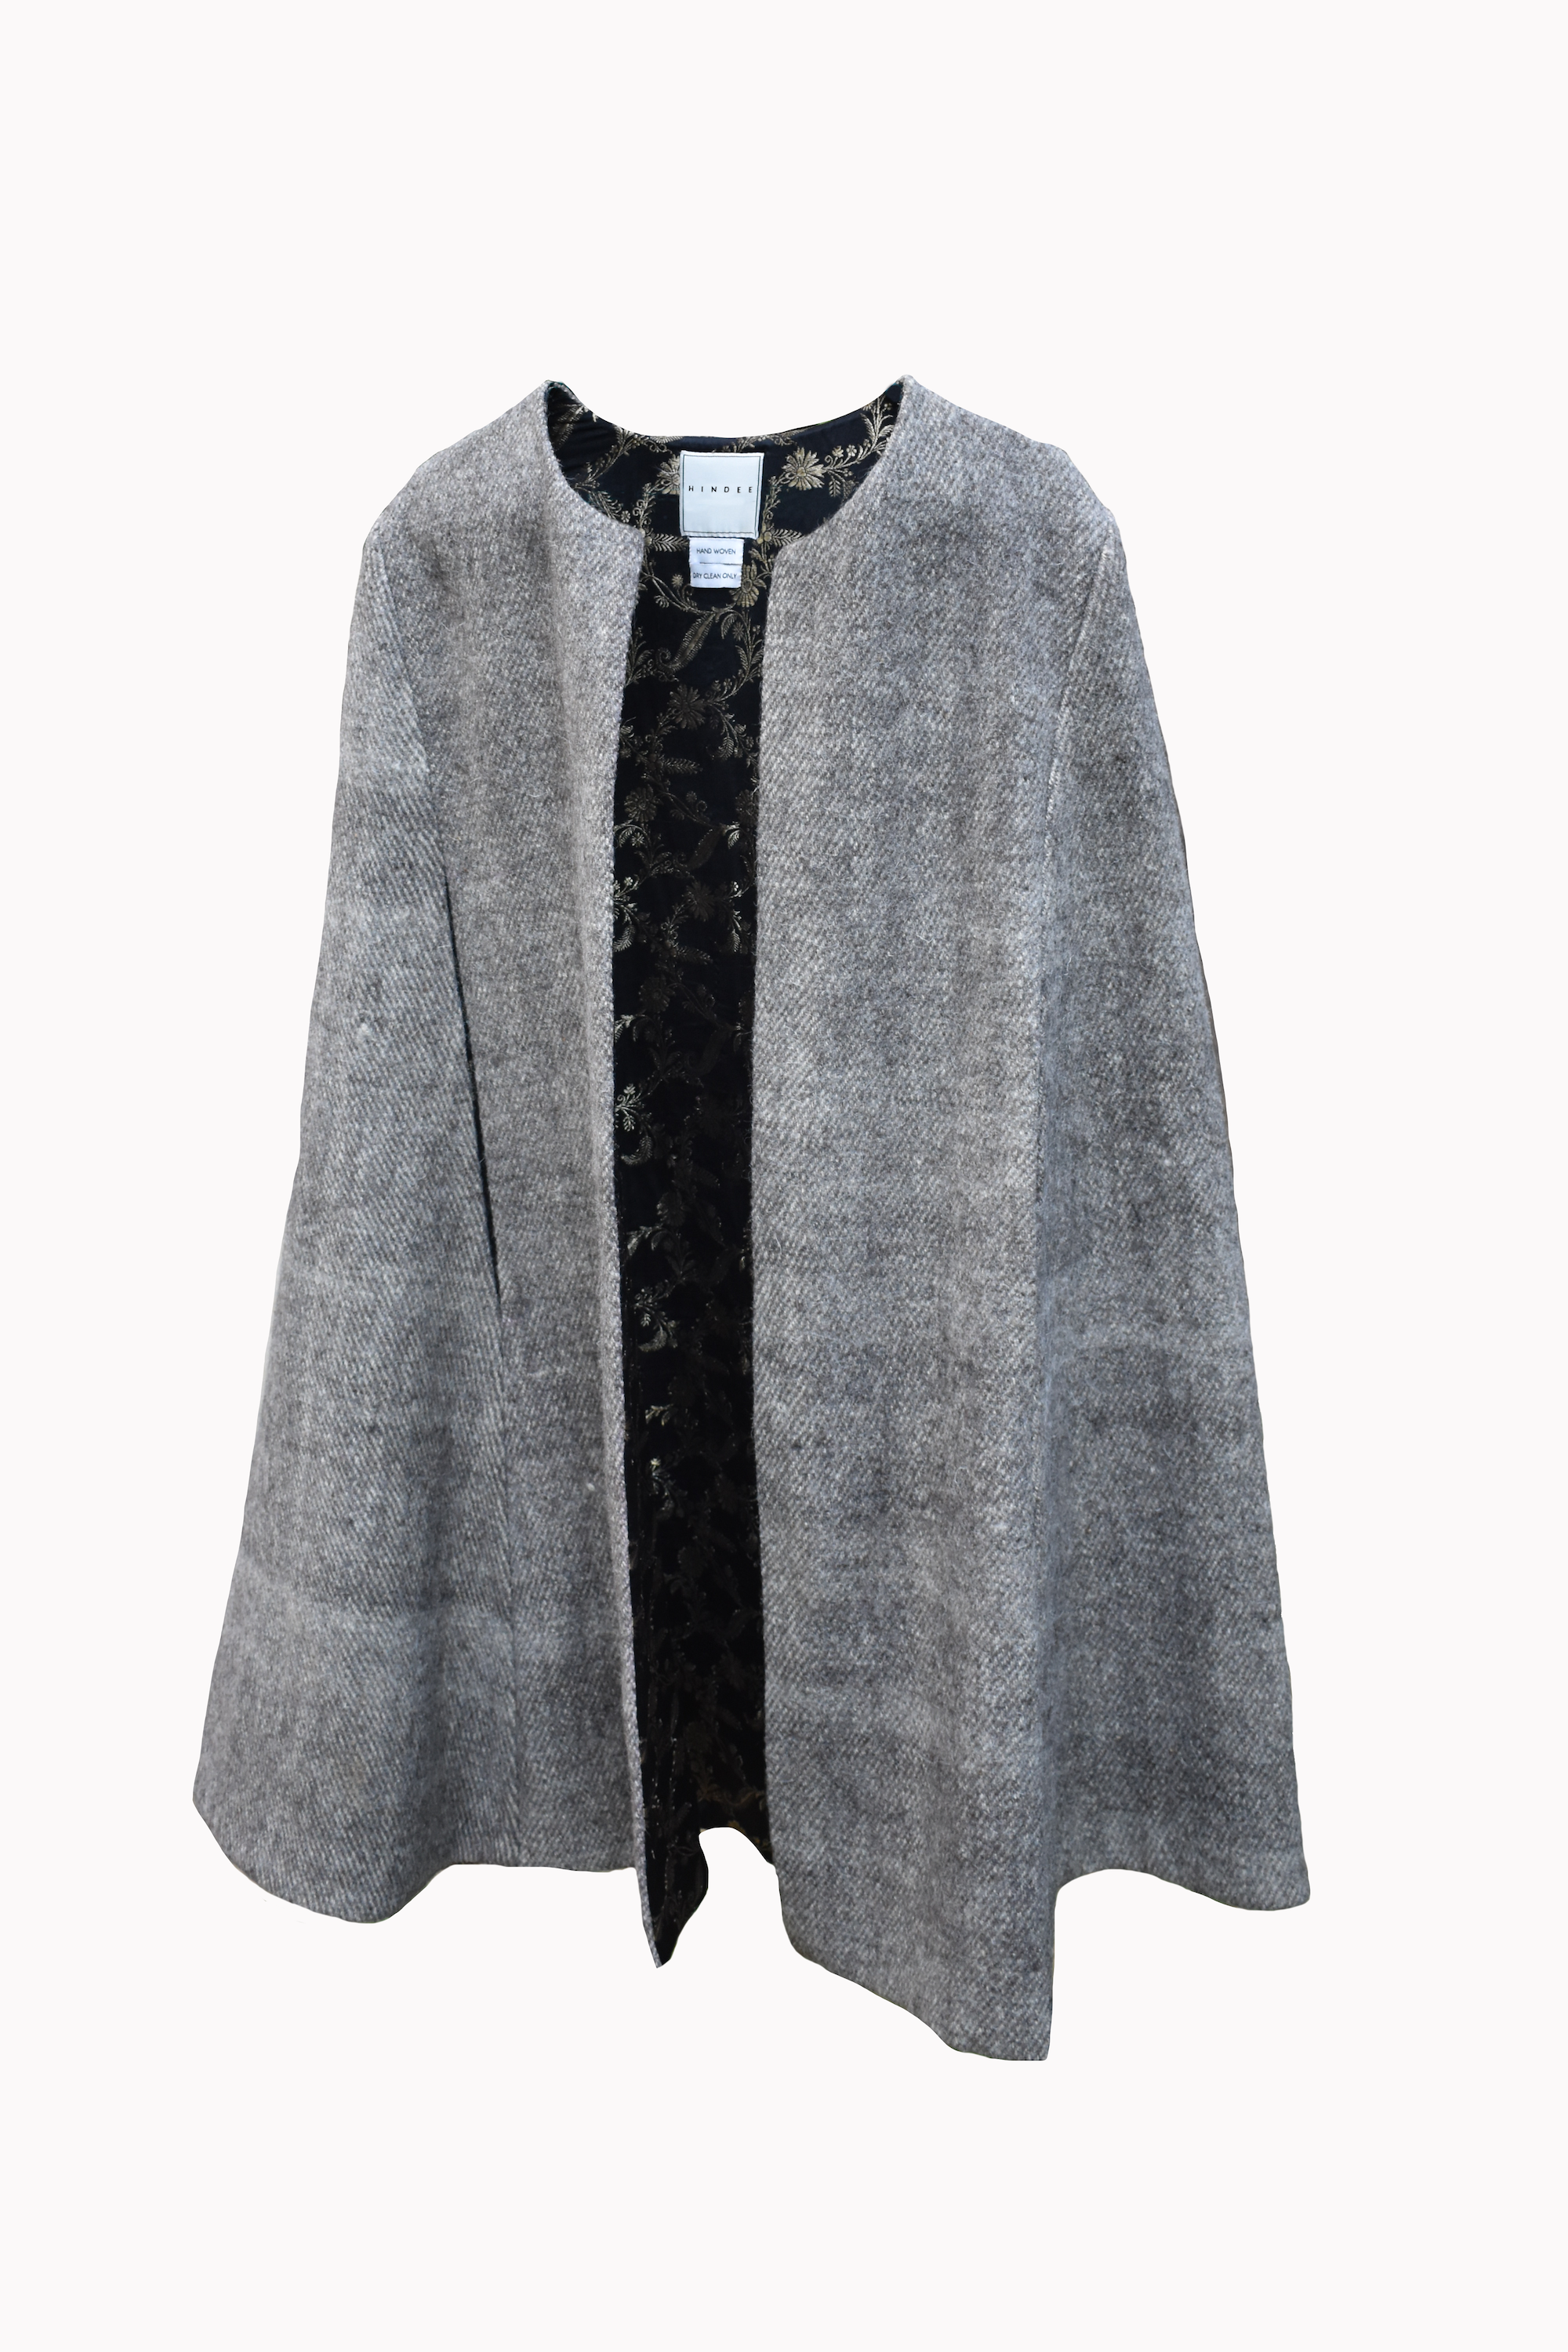 Grey Tweed Cape with Black Brocade lining